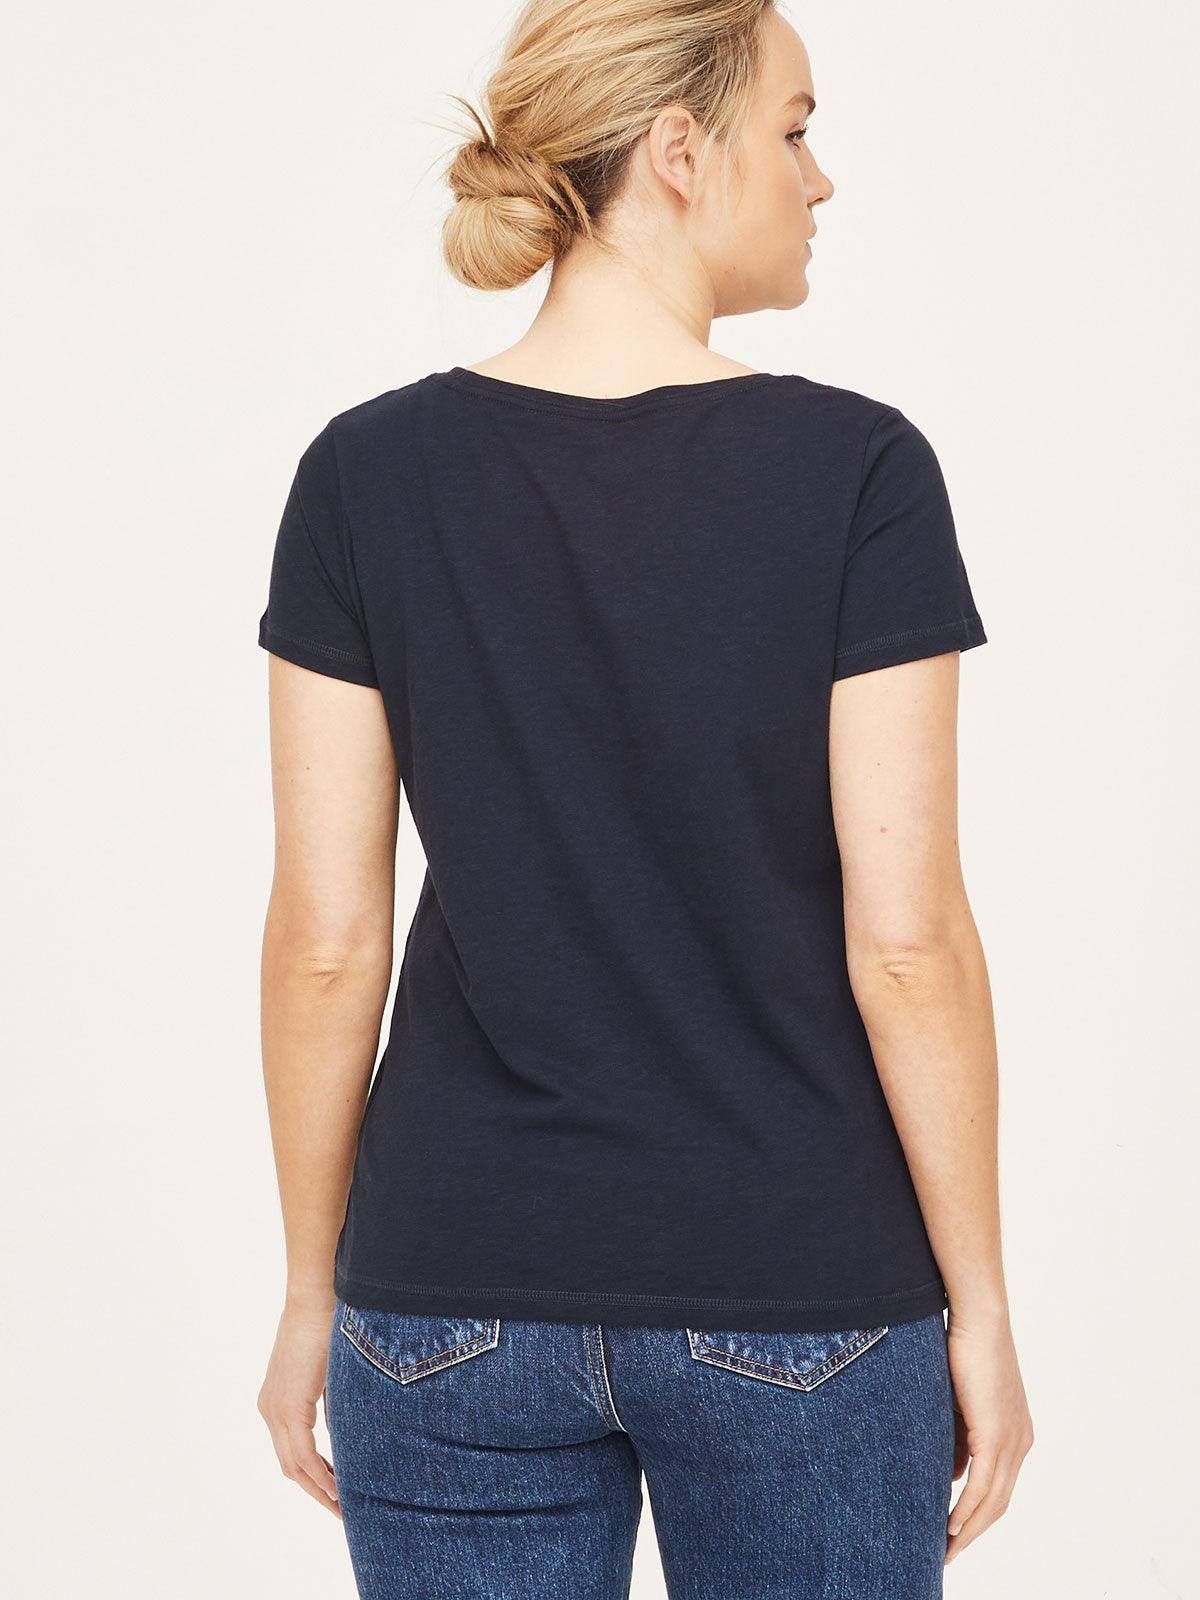 Fairtrade Organic Cotton Short Sleeve T-shirt - Navy